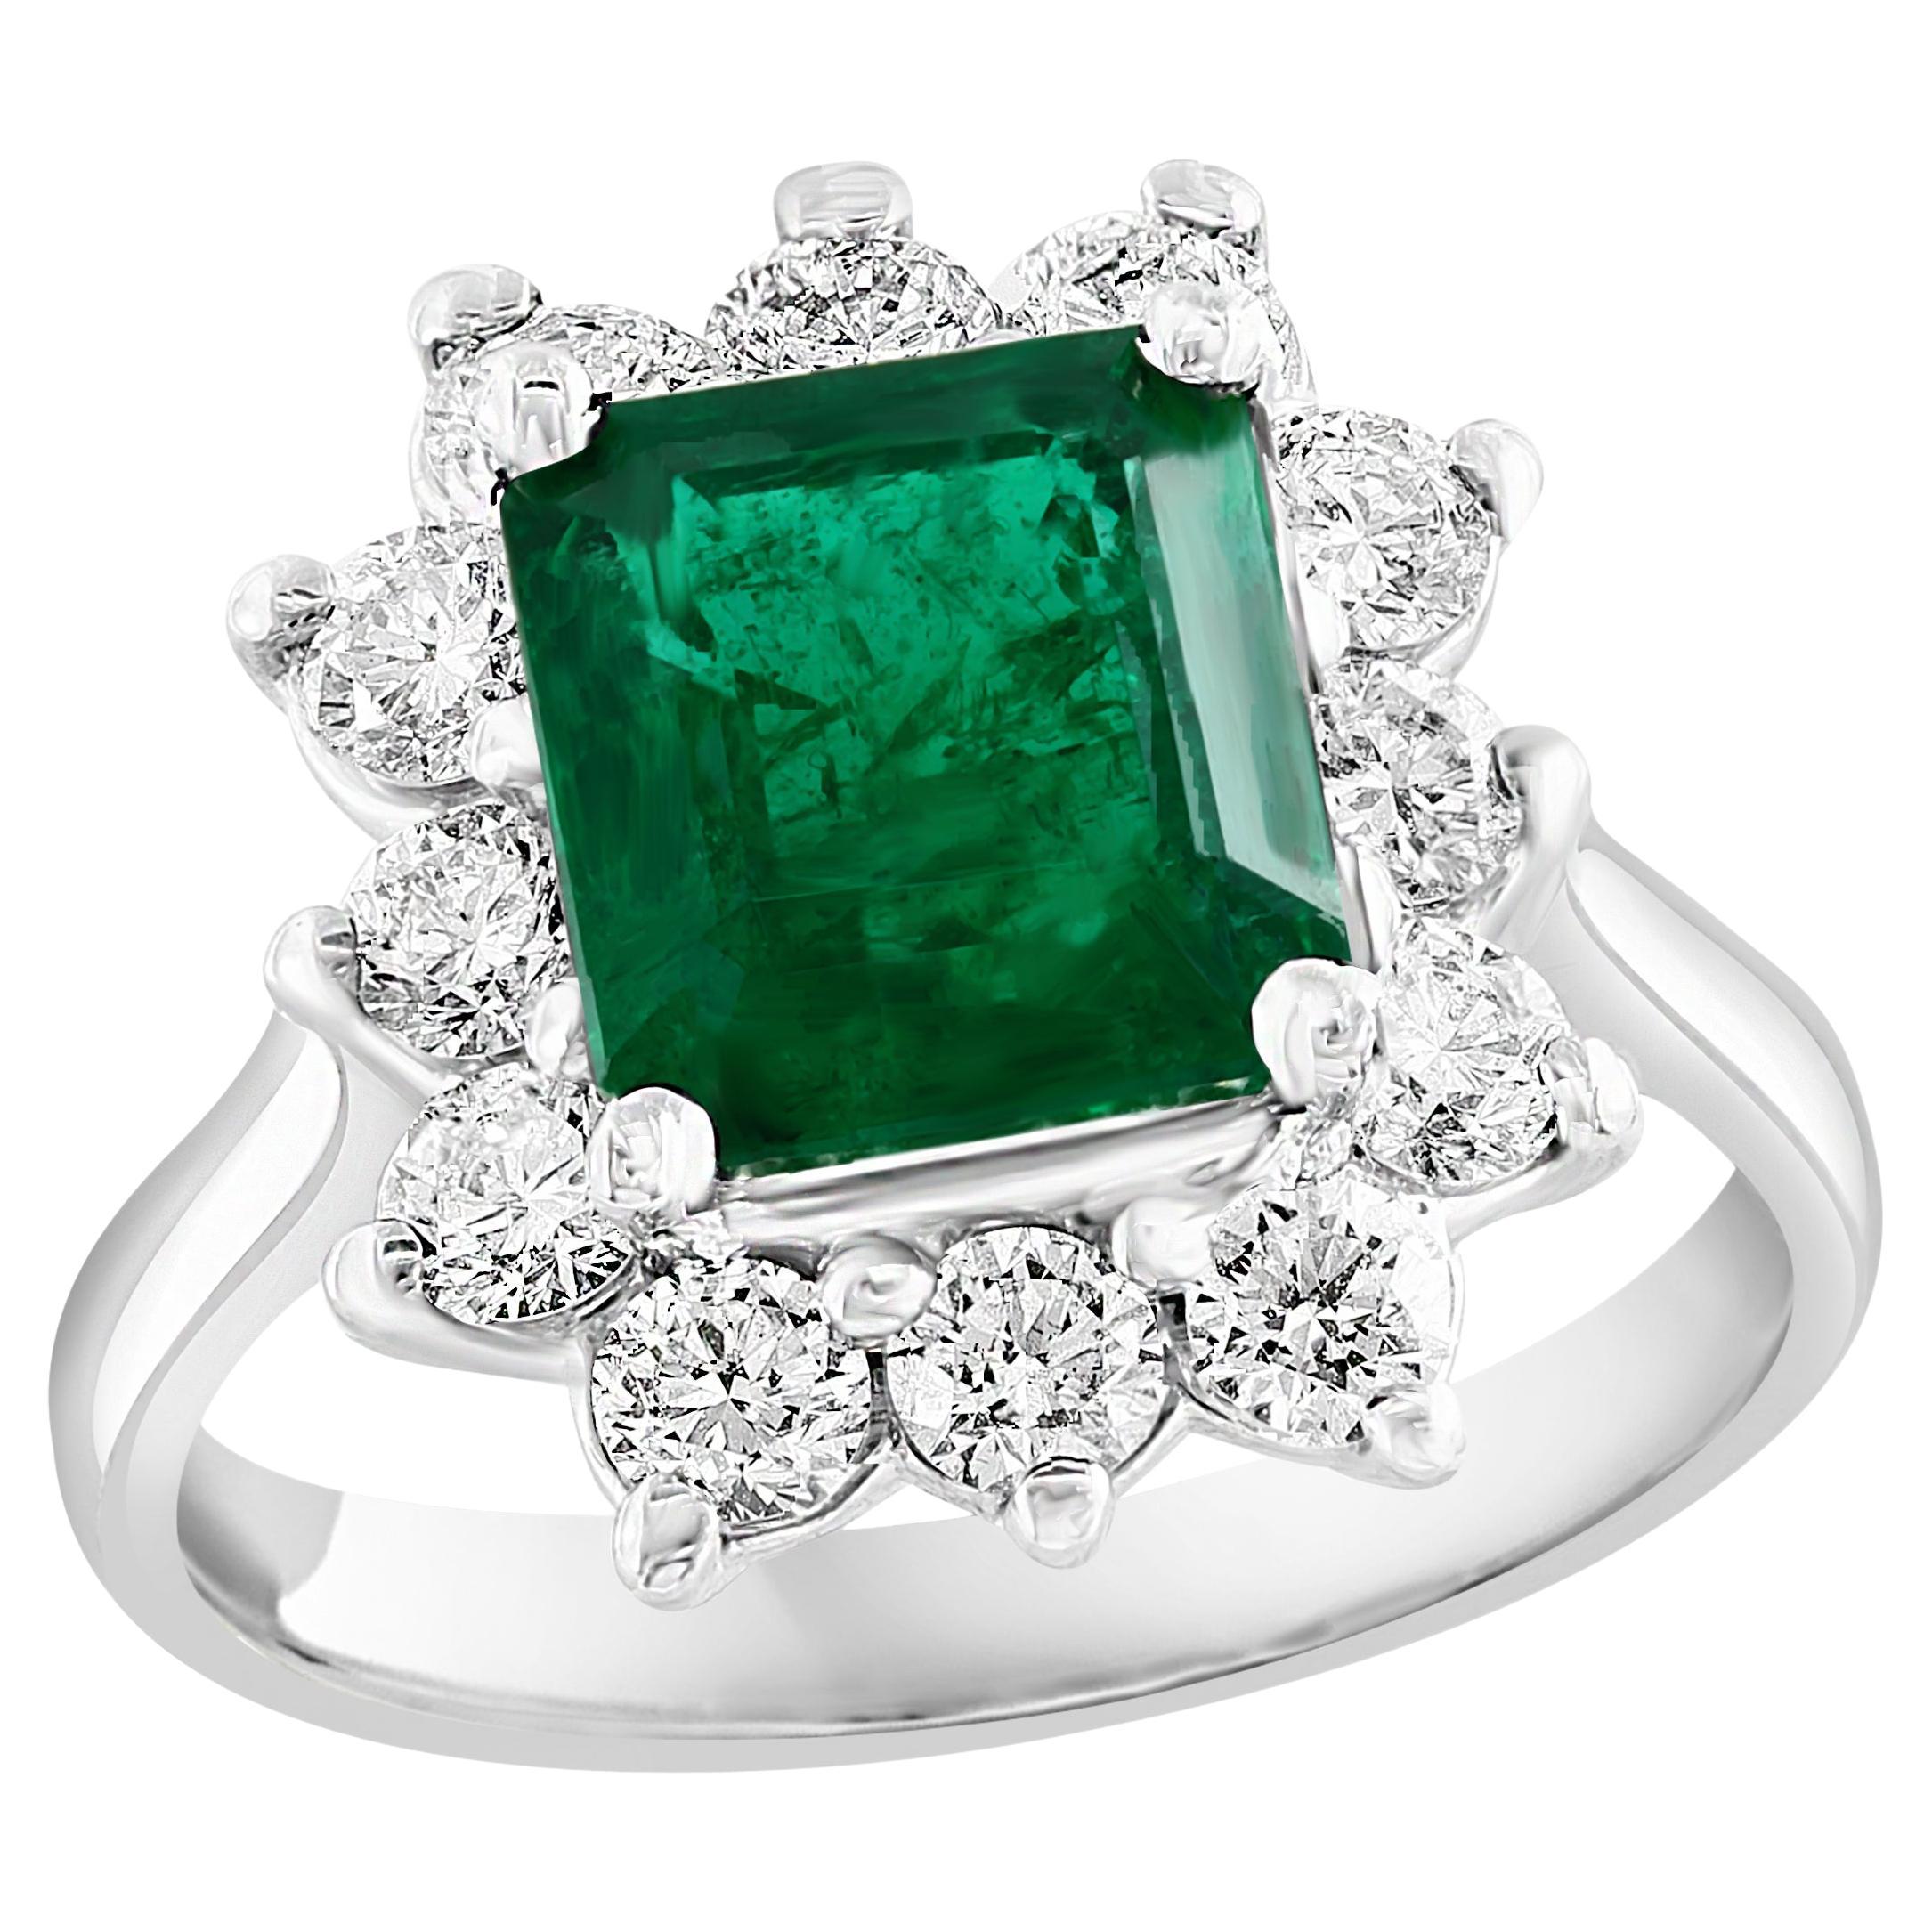 Certified 3.17 Carat Emerald Cut Emerald Diamond Ring in 14K White Gold